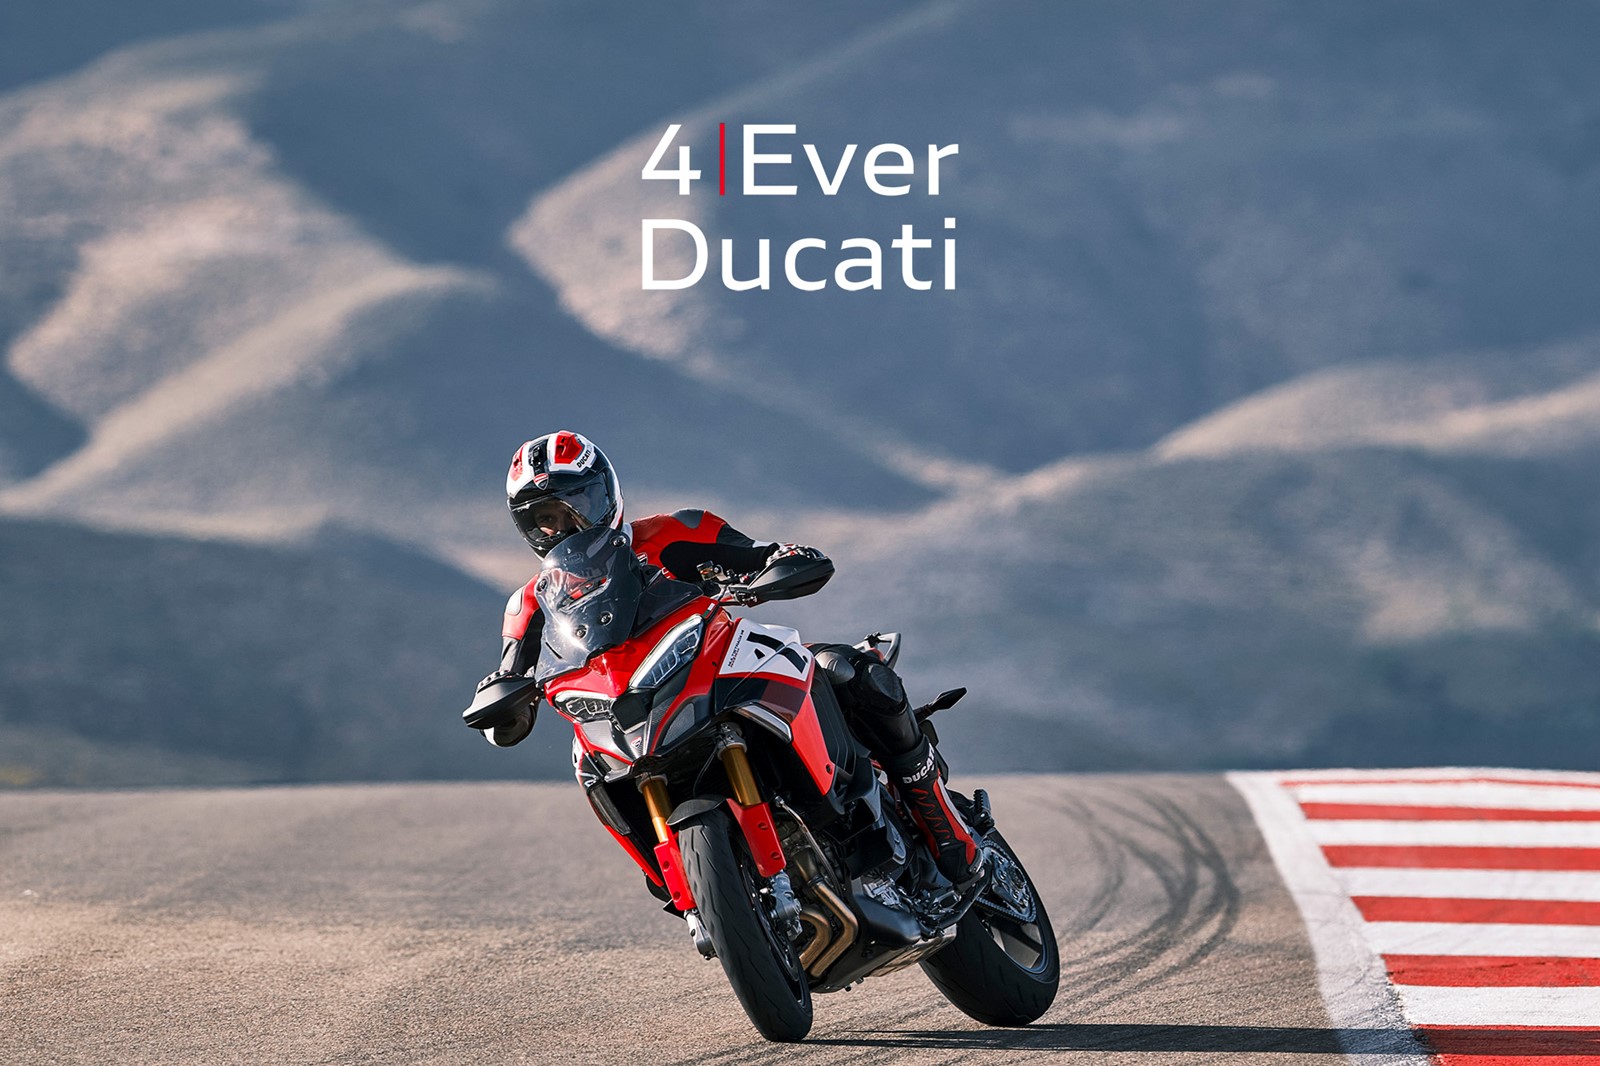 4Ever Ducati gwarancja 1 z